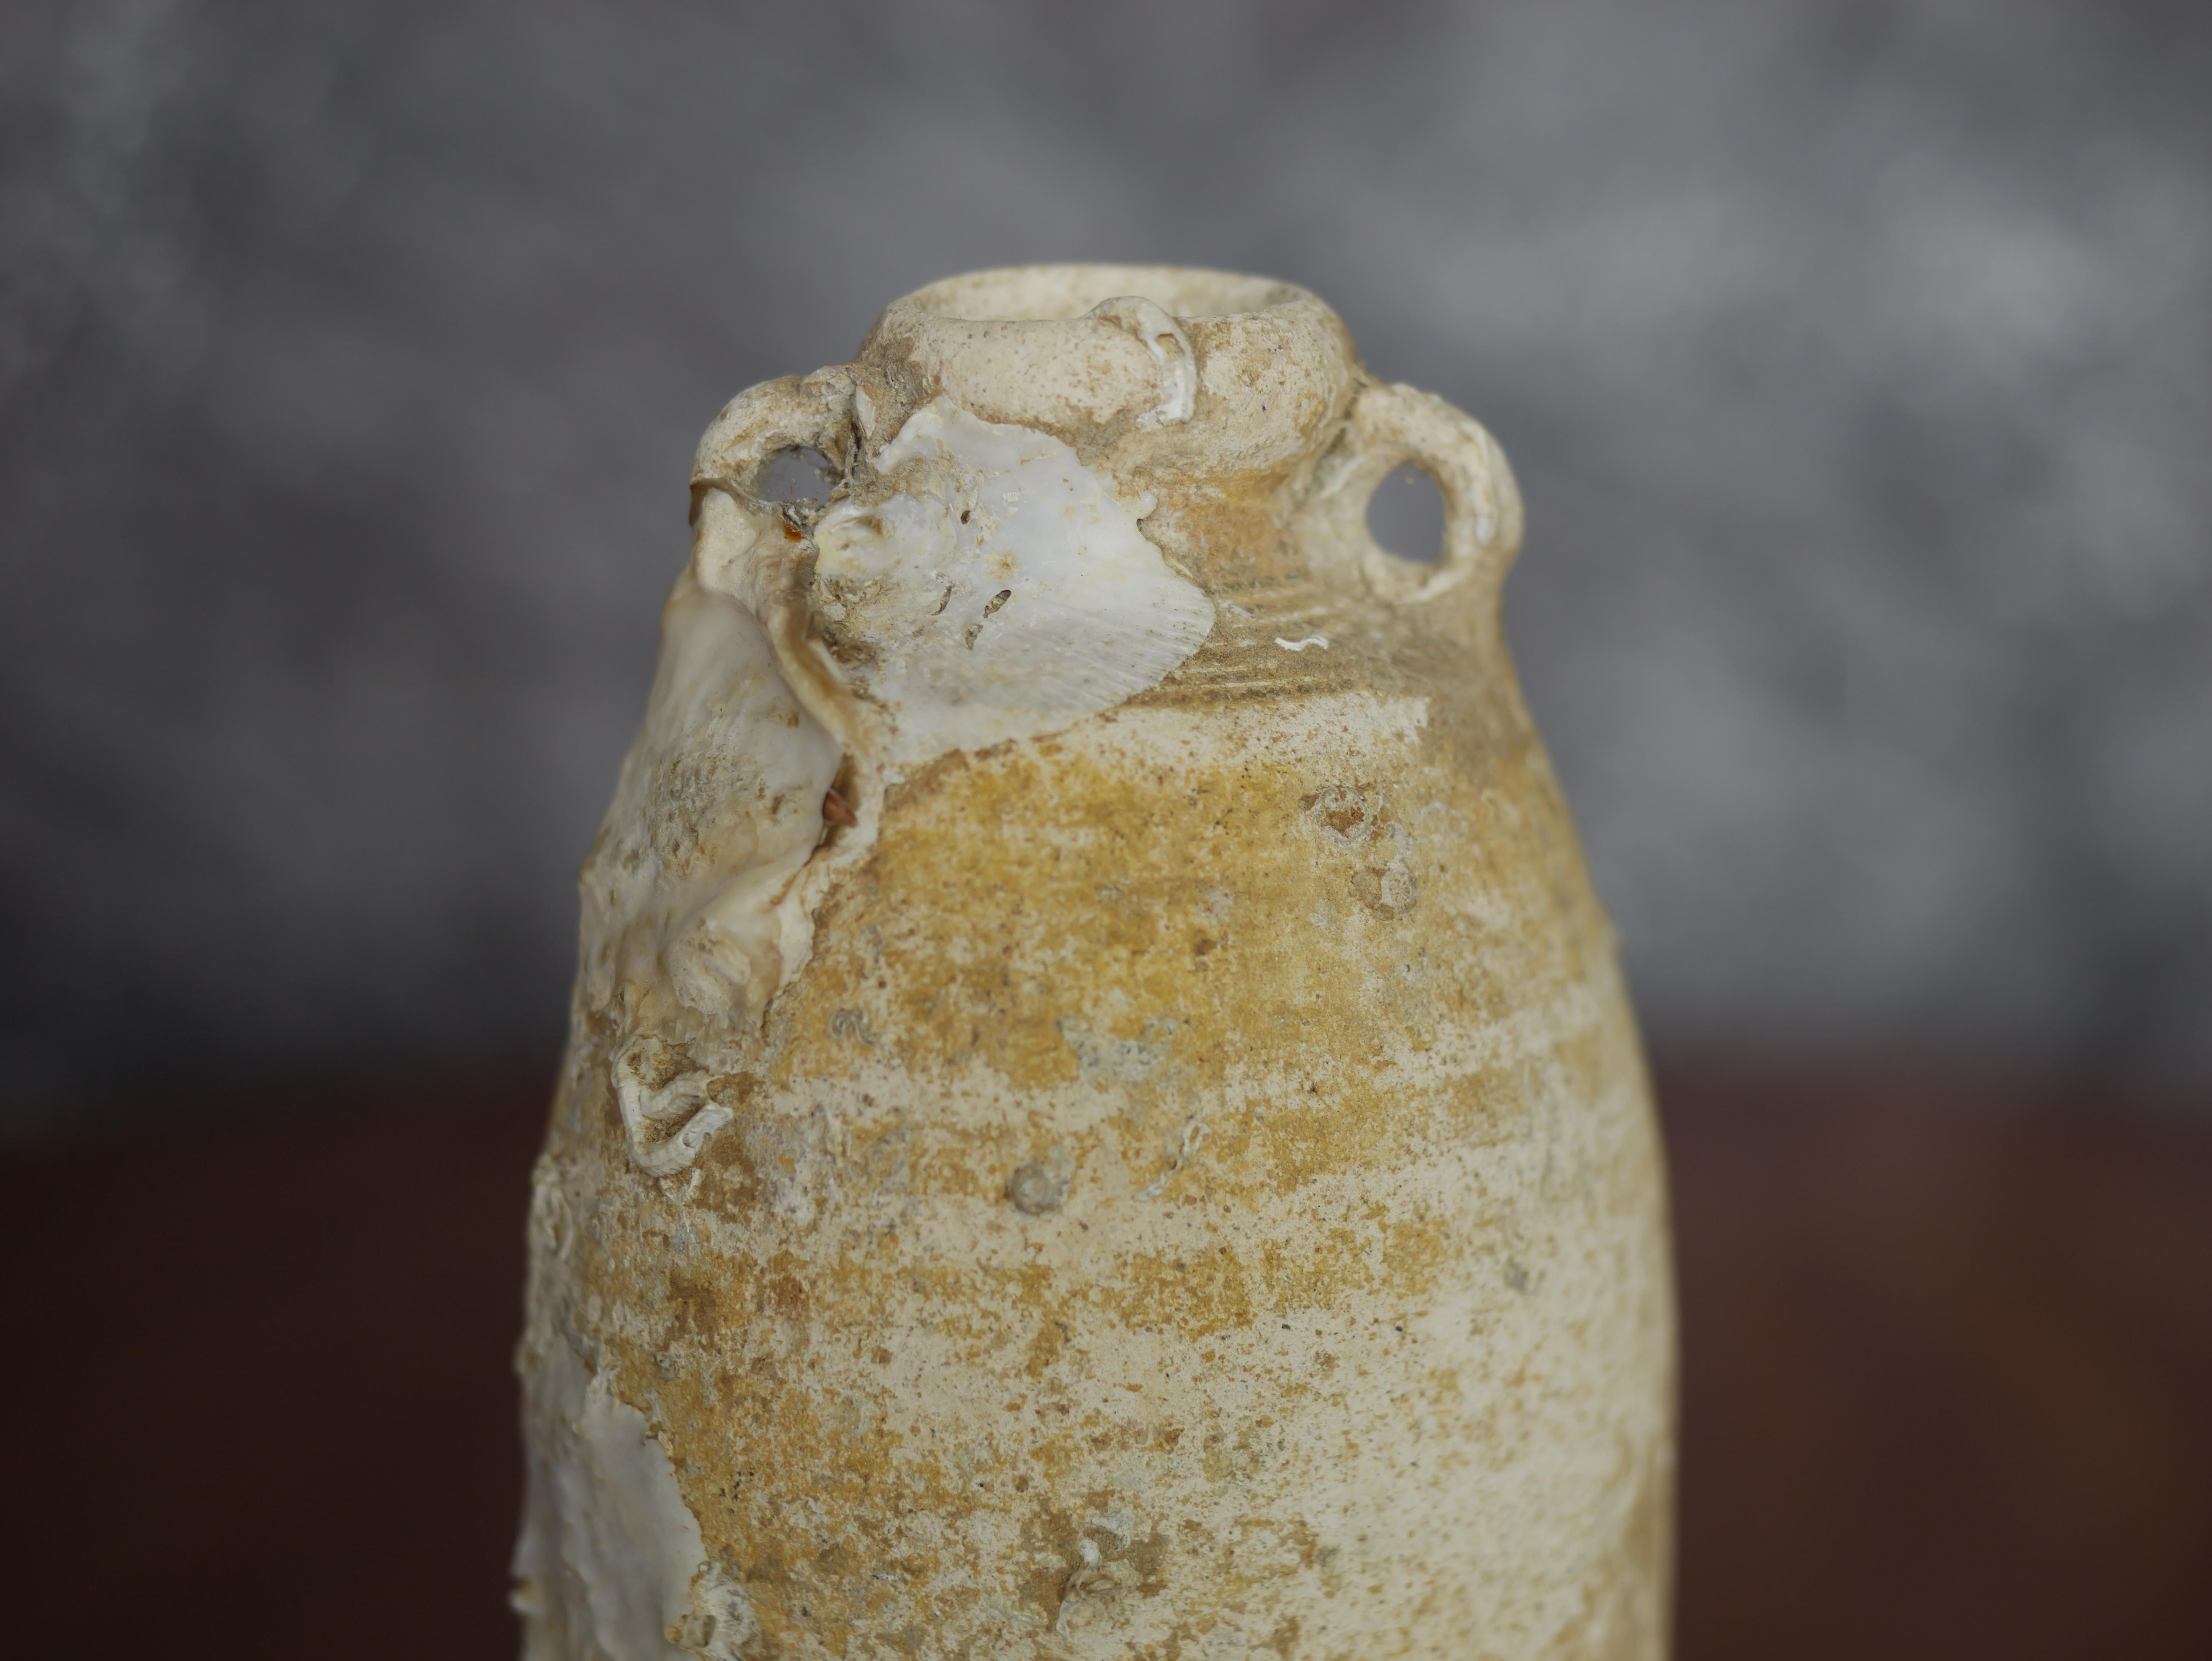 Cette jarre en céramique Sawankhalok du XVIIe siècle est une pièce remarquable qui témoigne de l'artisanat exquis du royaume de Sukhothai, en Thaïlande. La jarre présente des excroissances marines naturelles, ce qui ajoute à son authenticité et à